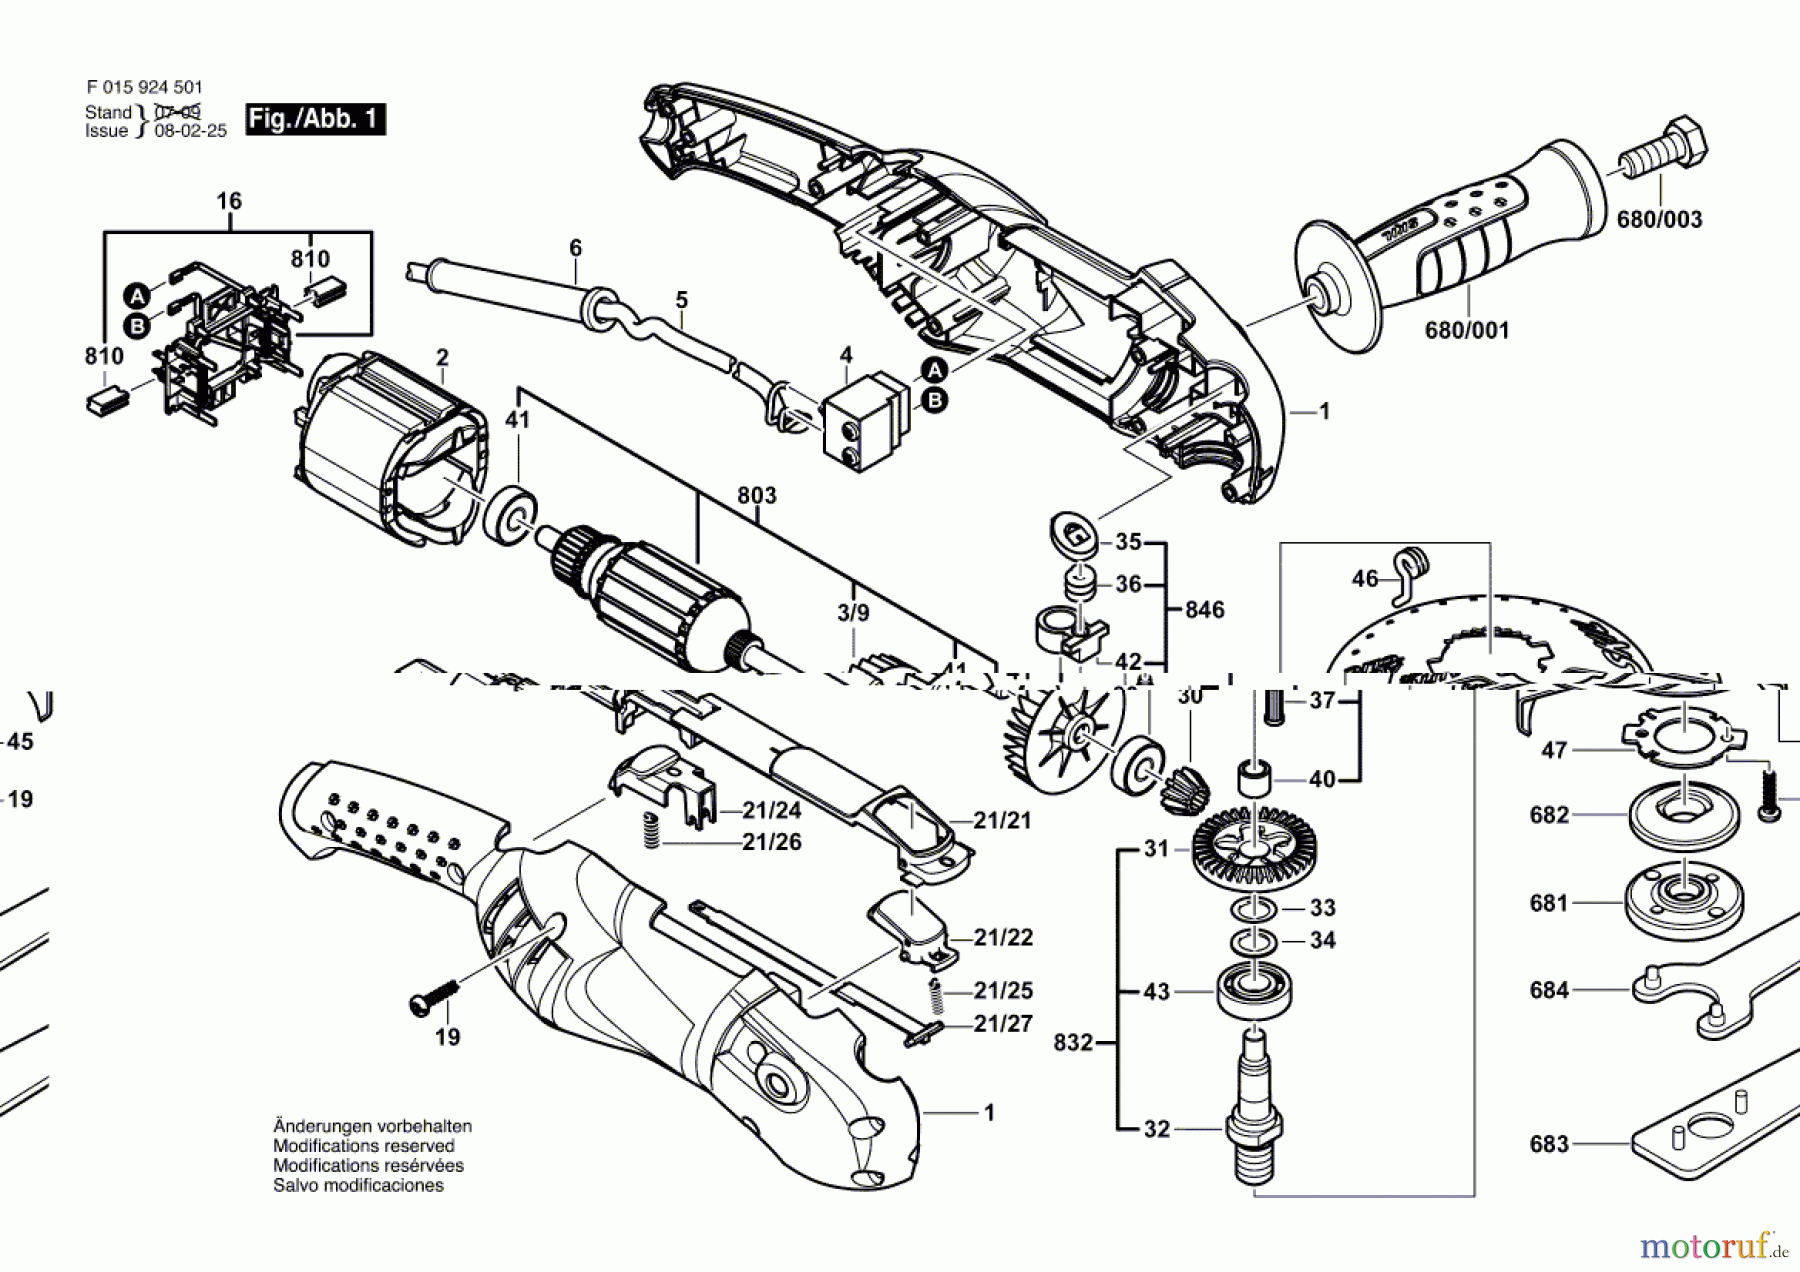  Bosch Werkzeug Winkelschleifer 9245 Seite 1